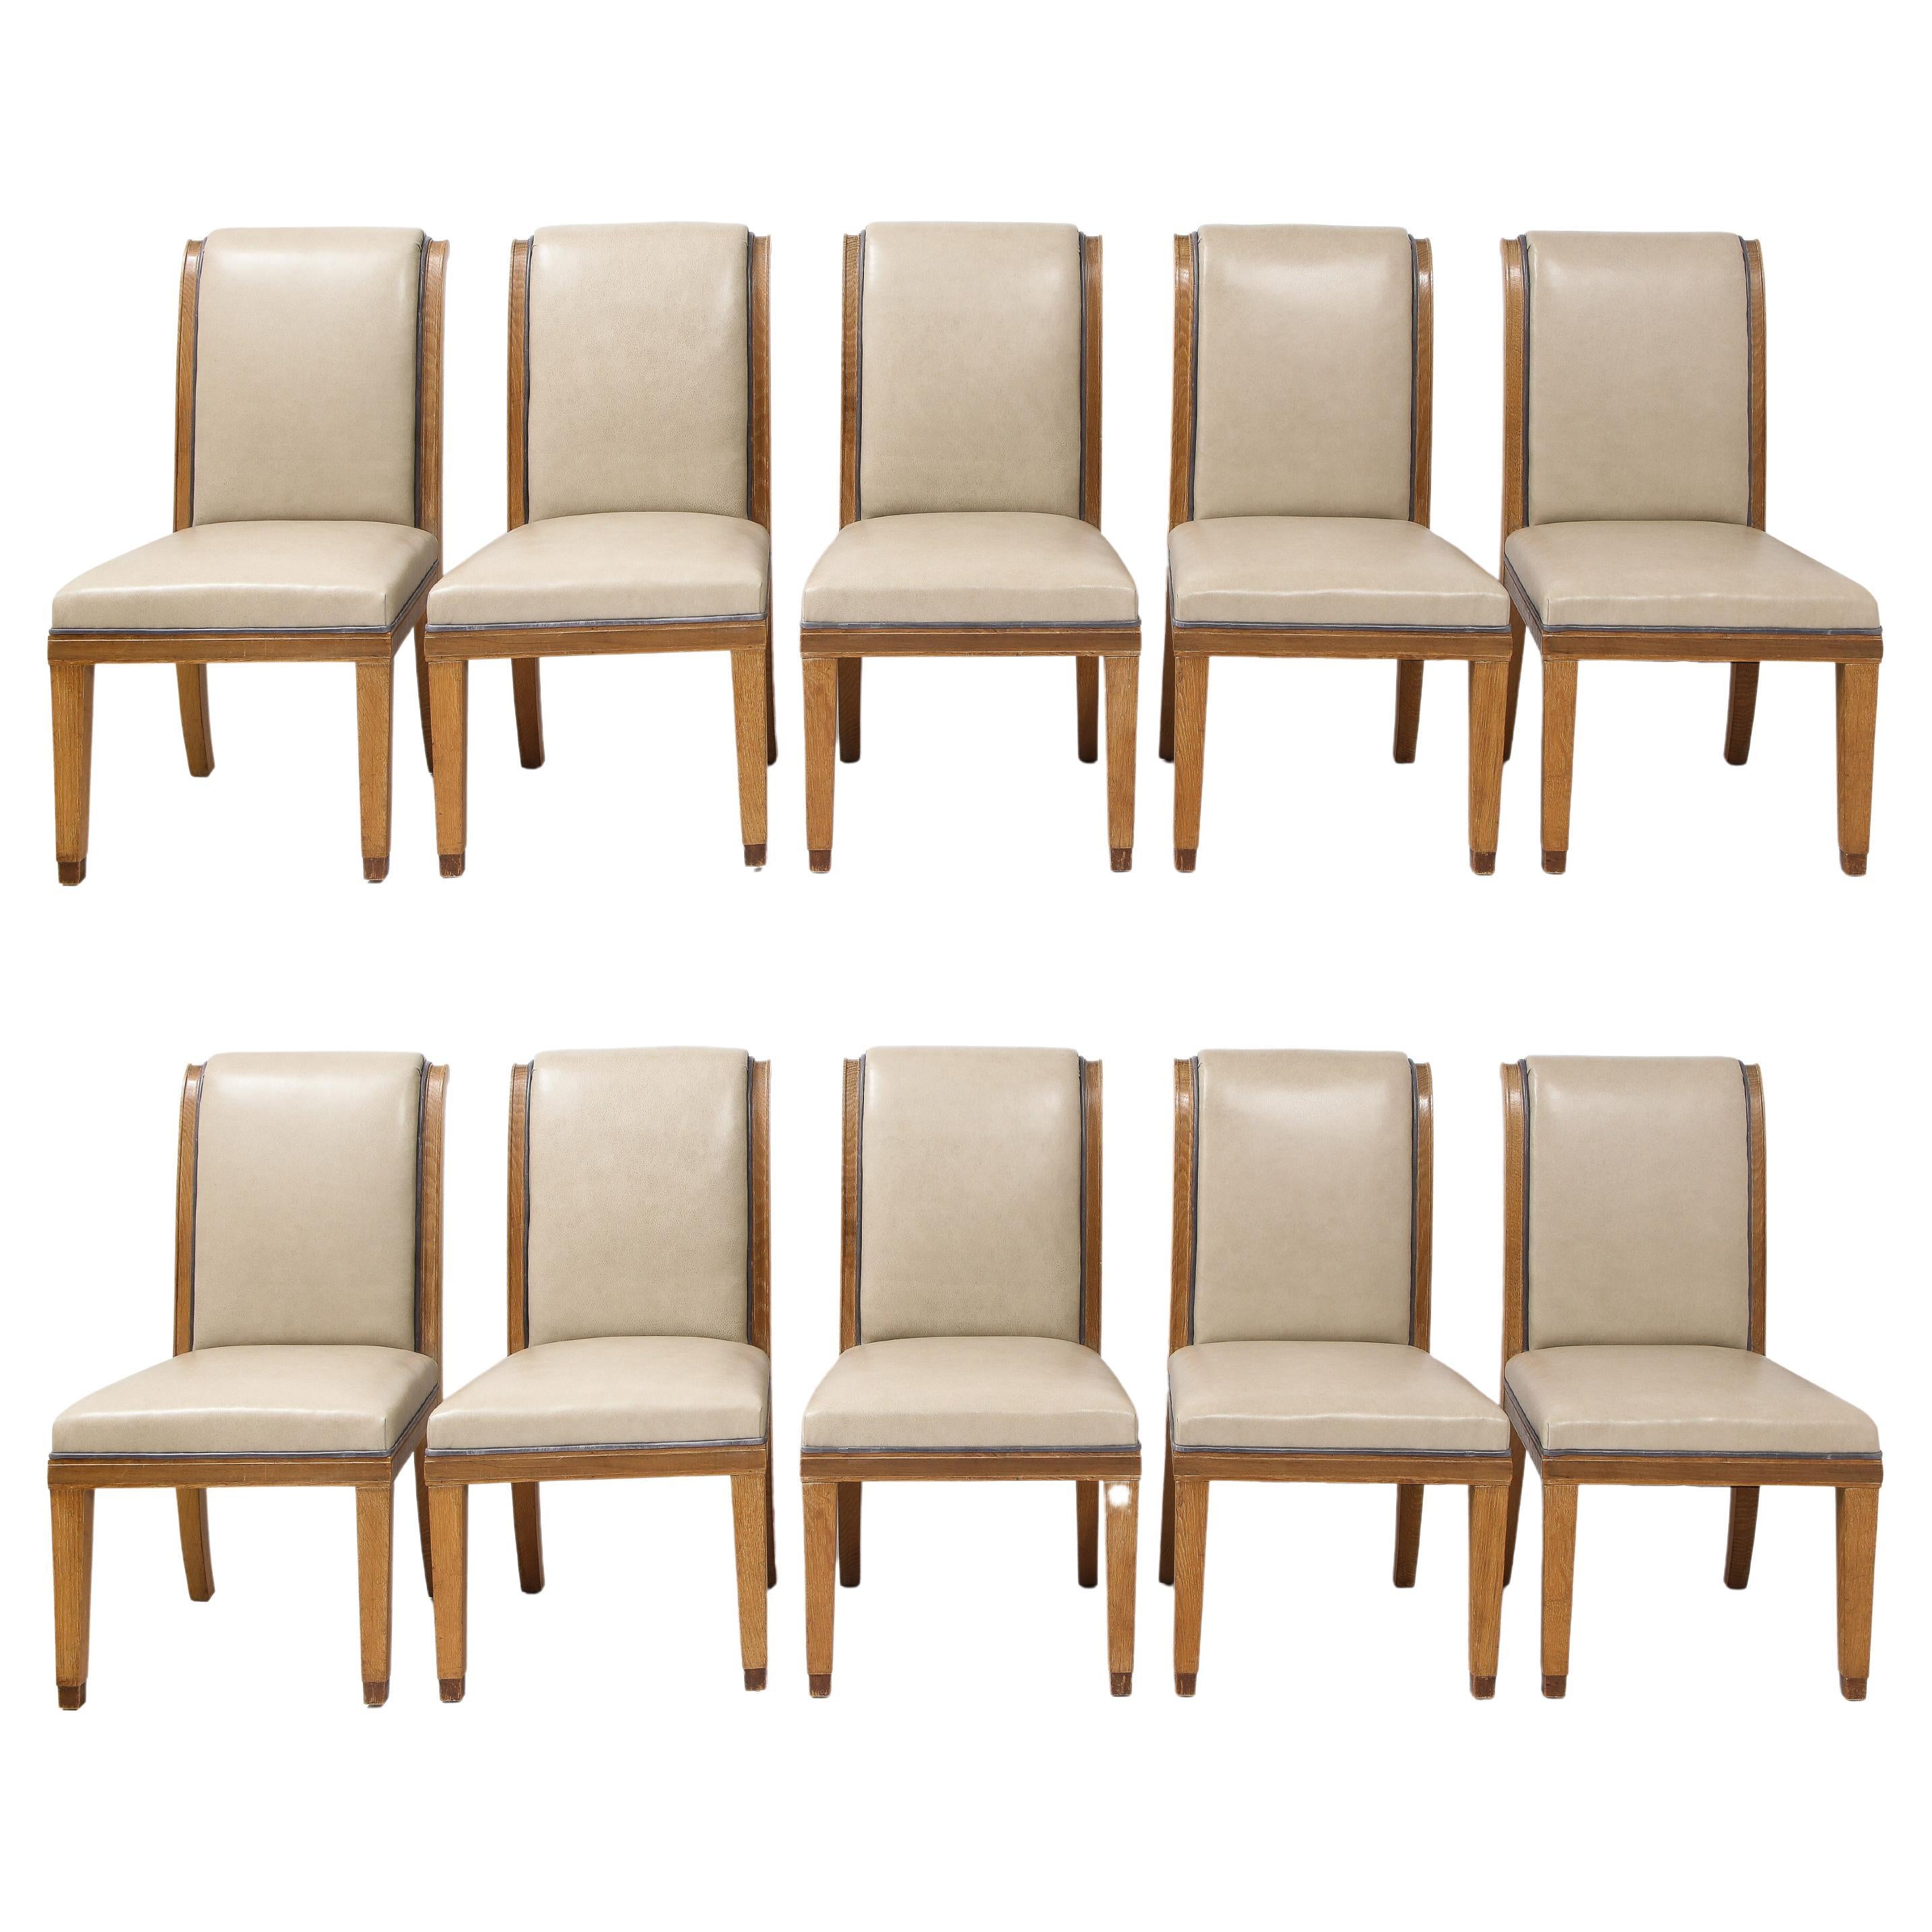 Satz von 10 französischen Esszimmerstühlen im Art-Déco-Stil aus Leder, Eiche und Bronze, maßgefertigt